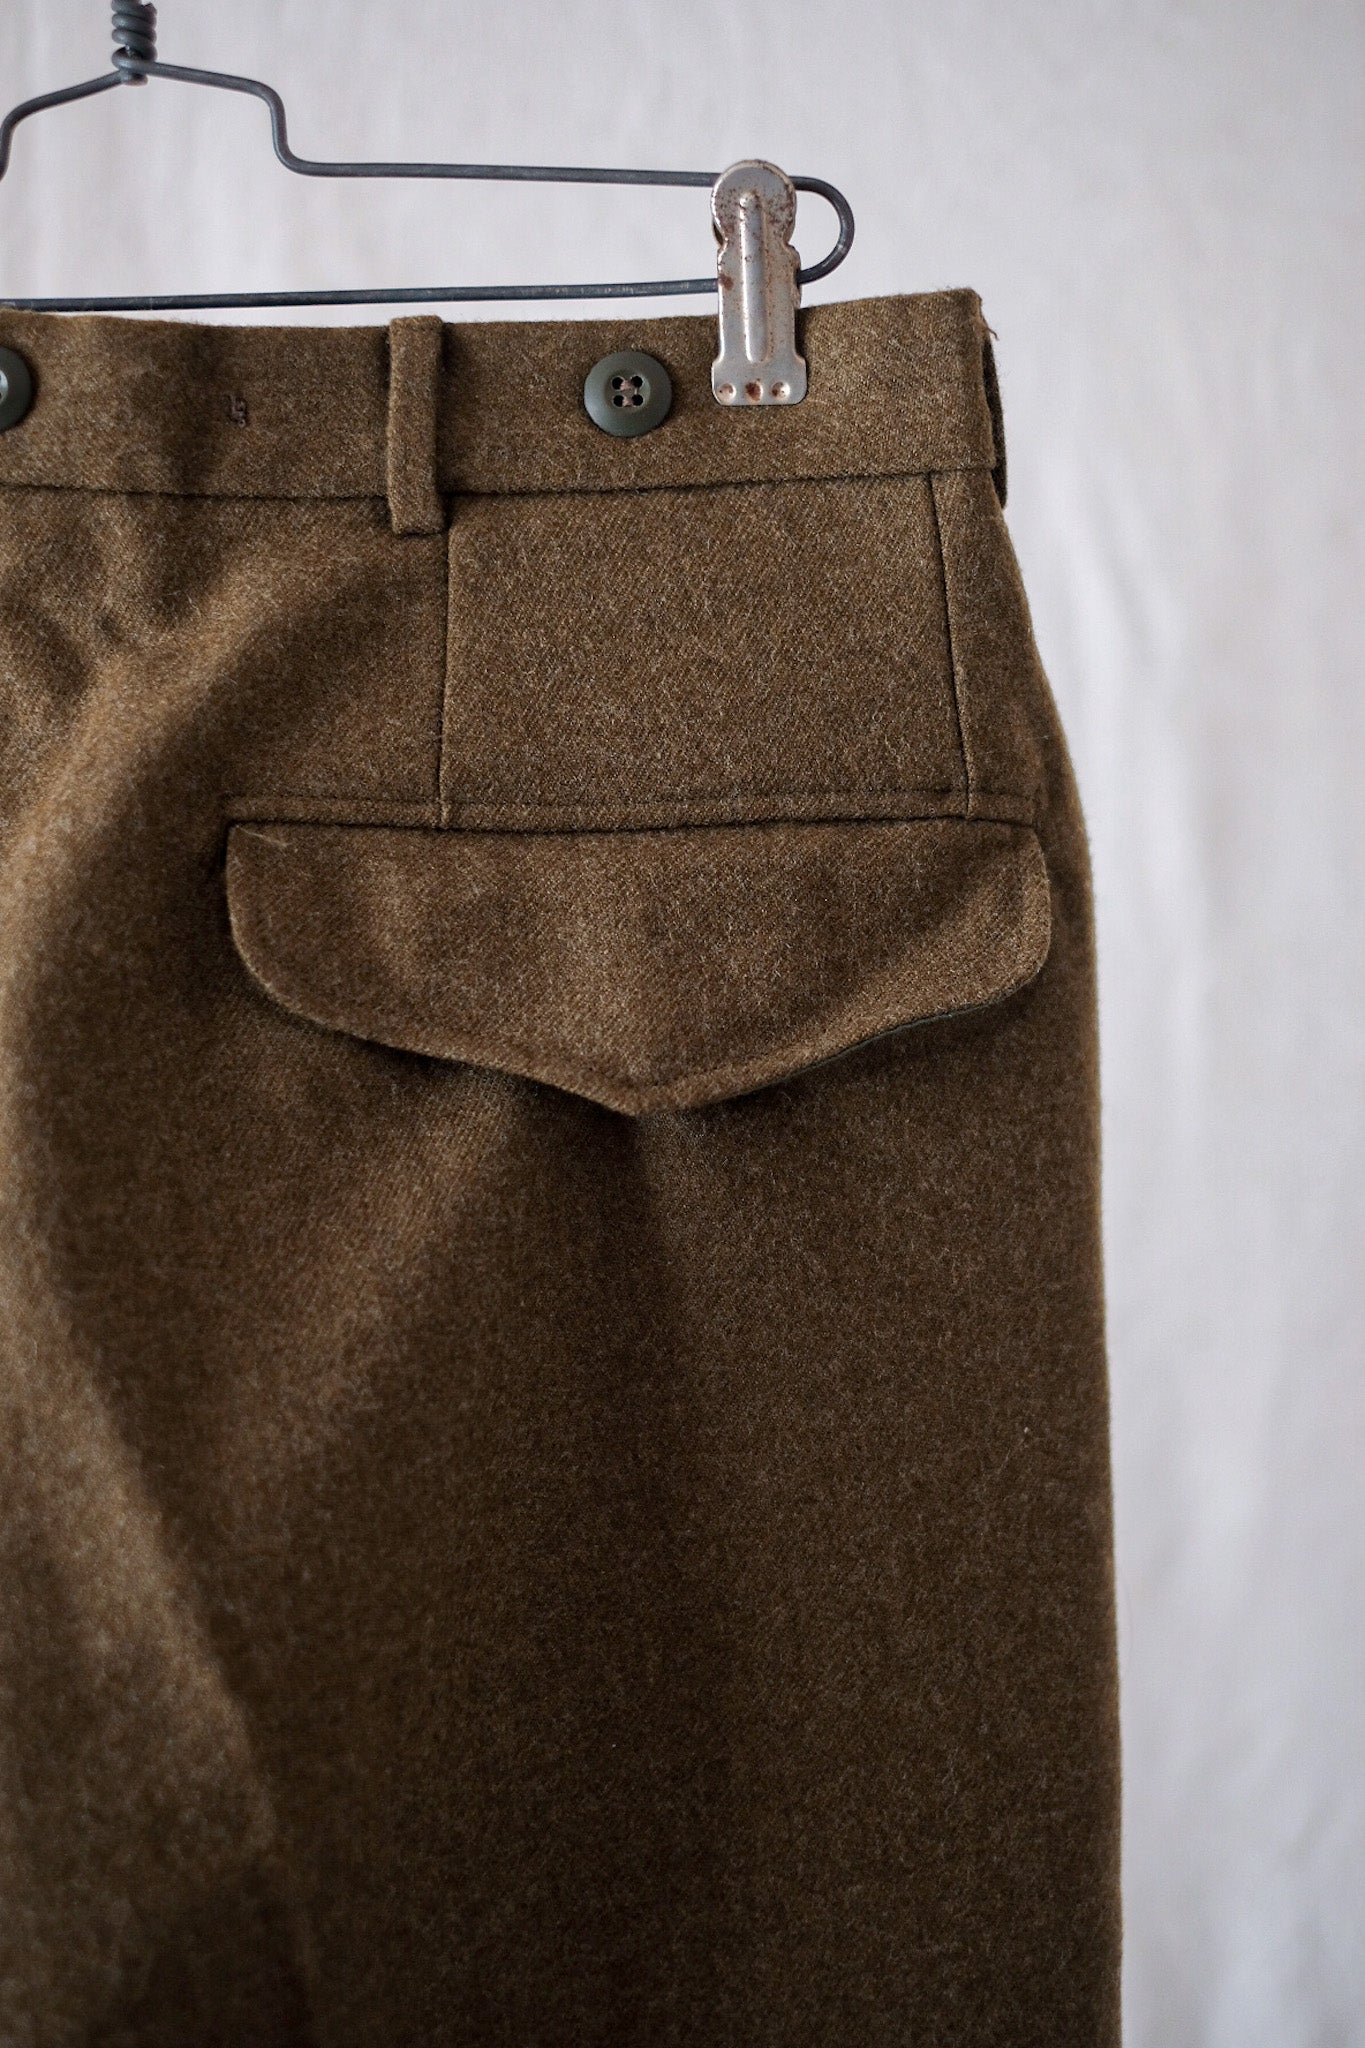 [〜90年代]澳大利亞軍隊羊毛長褲尺寸。76S